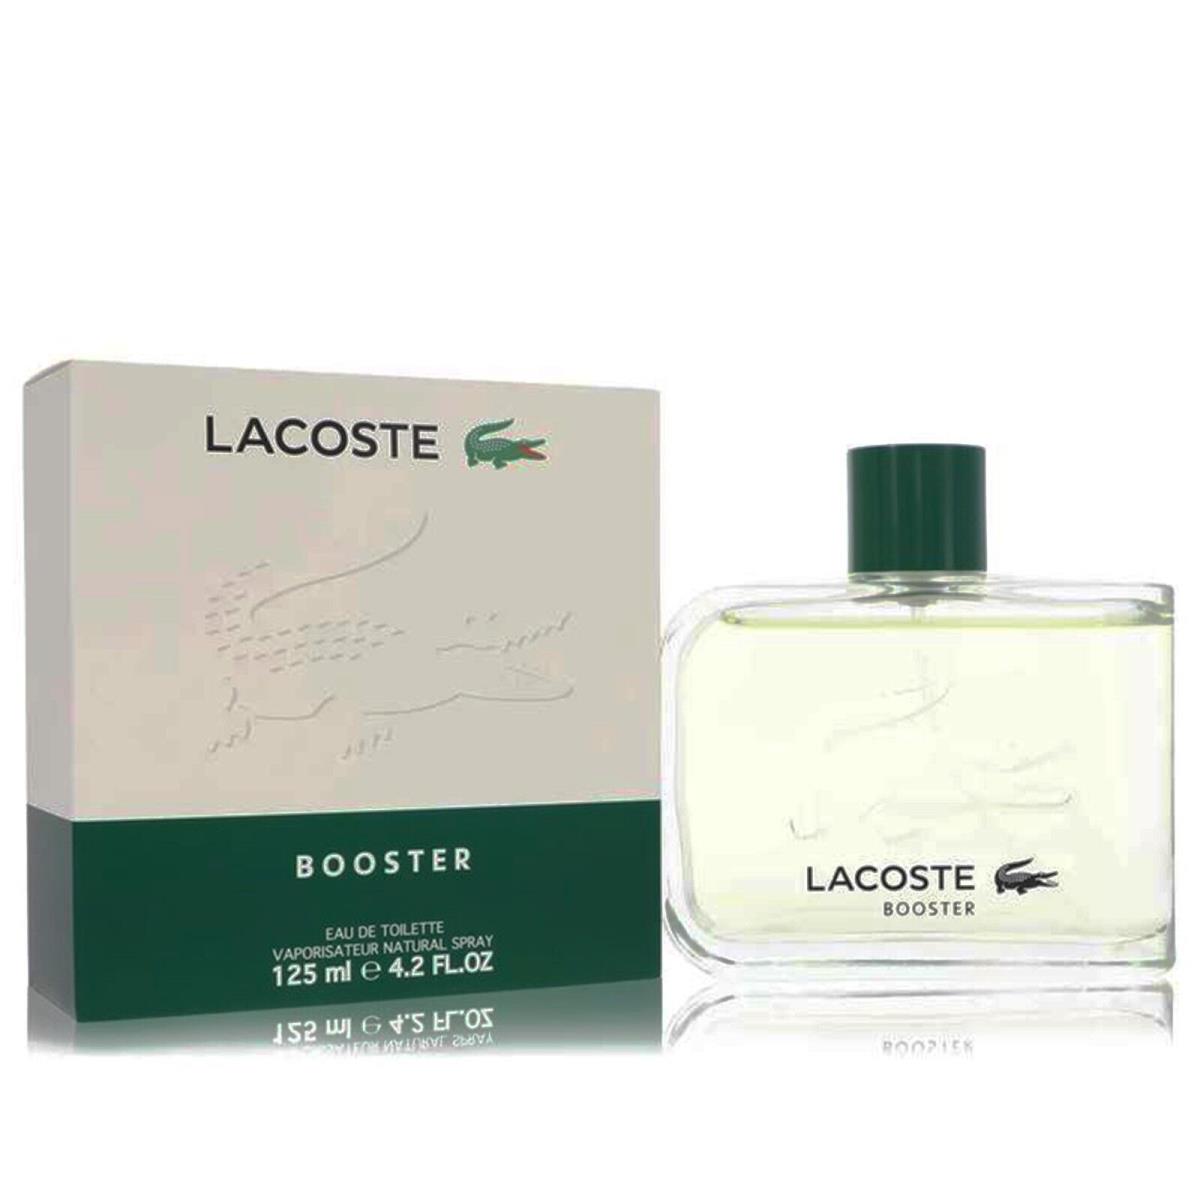 Booster Cologne by Lacoste Men Perfume Eau De Toilette Fragrance Spray 4.2 oz